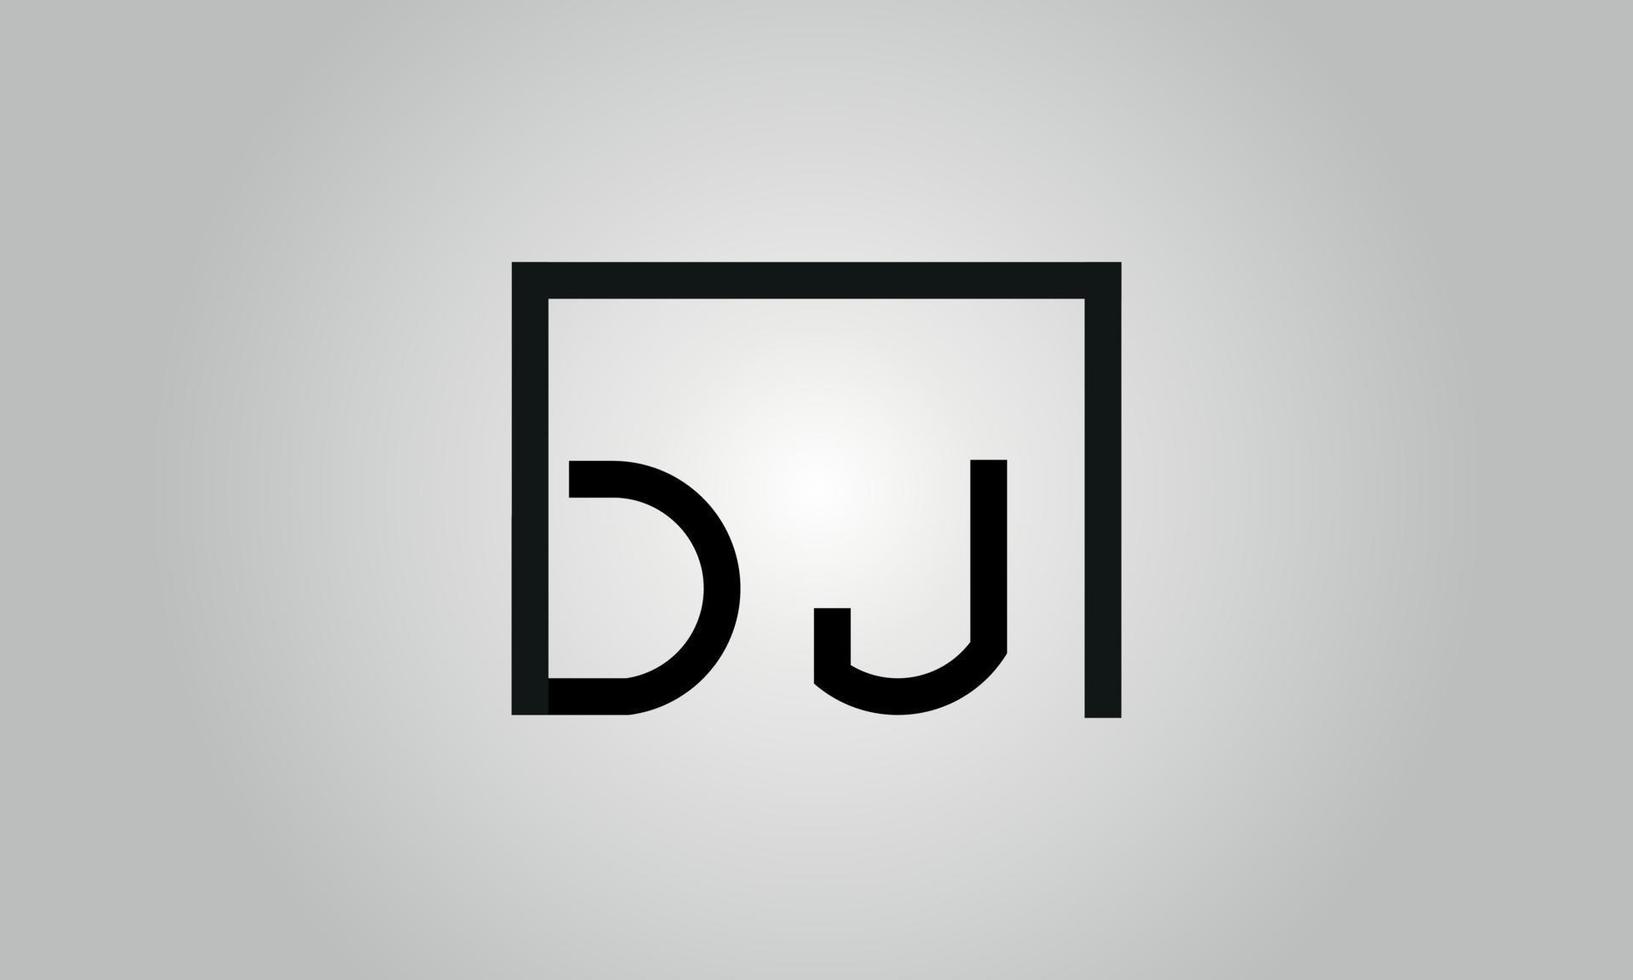 création de logo lettre dj. logo dj avec forme carrée dans le modèle vectoriel gratuit de couleurs noires.